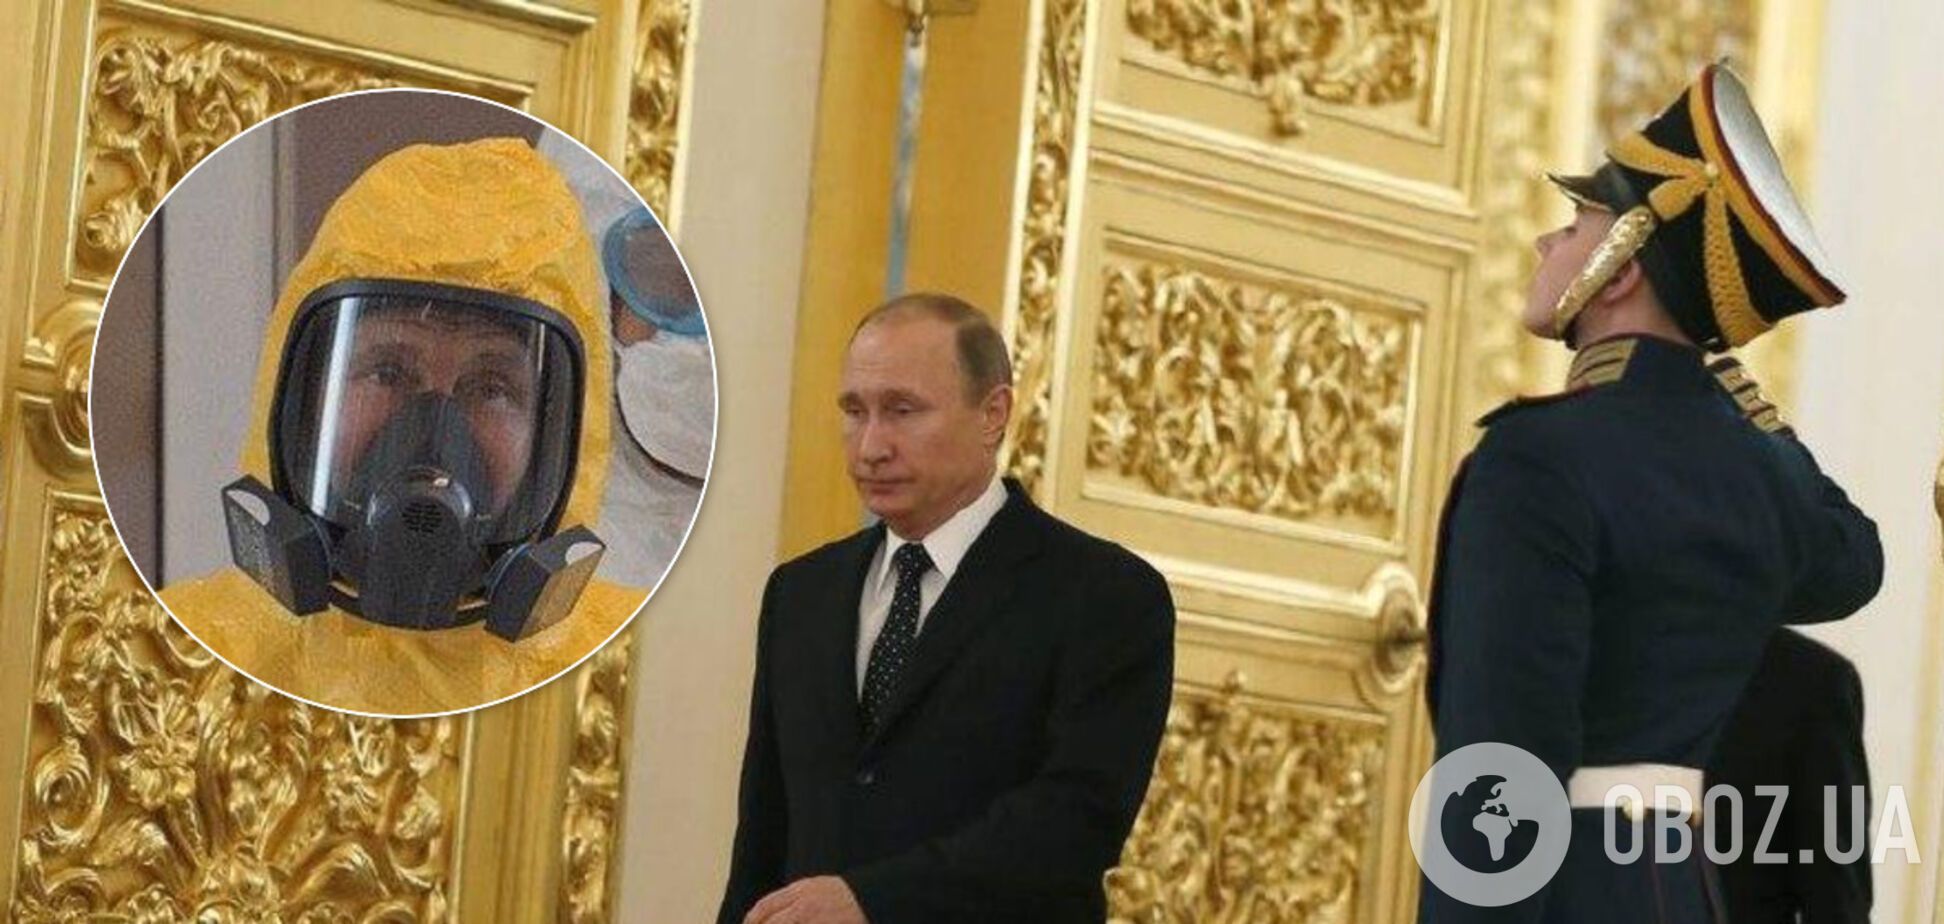 Путин 20 лет у власти в России: в сети показали два знаковых фото